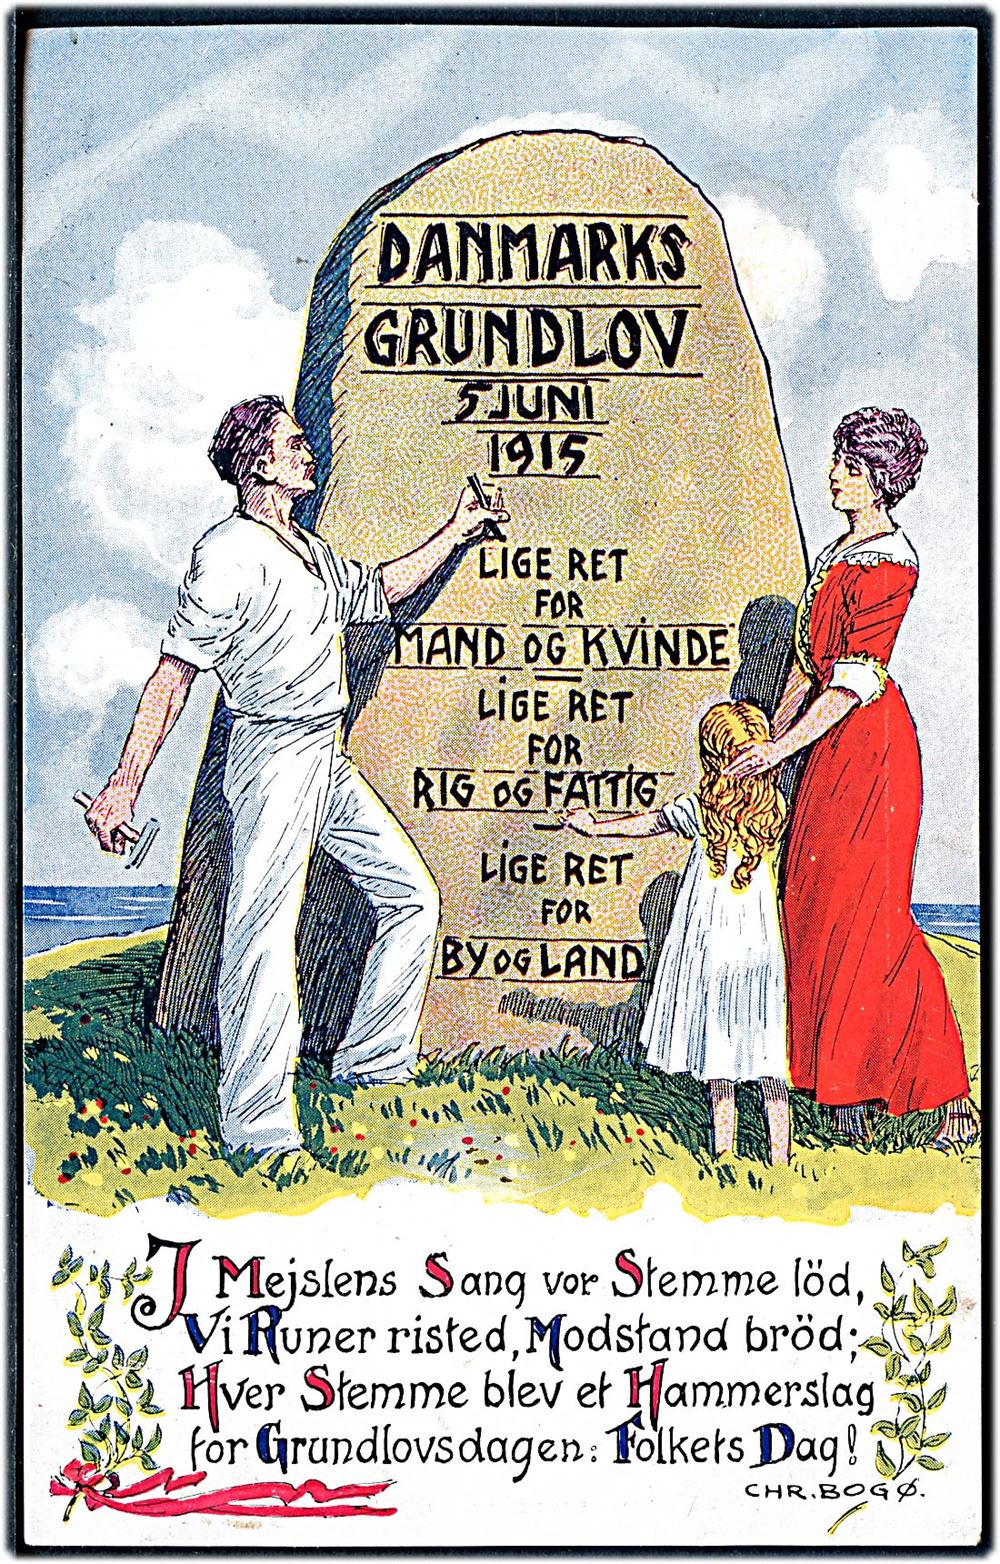 Danmarks Grundlov 5 Juni 1915 med tekst og tegning af Chr Bogø